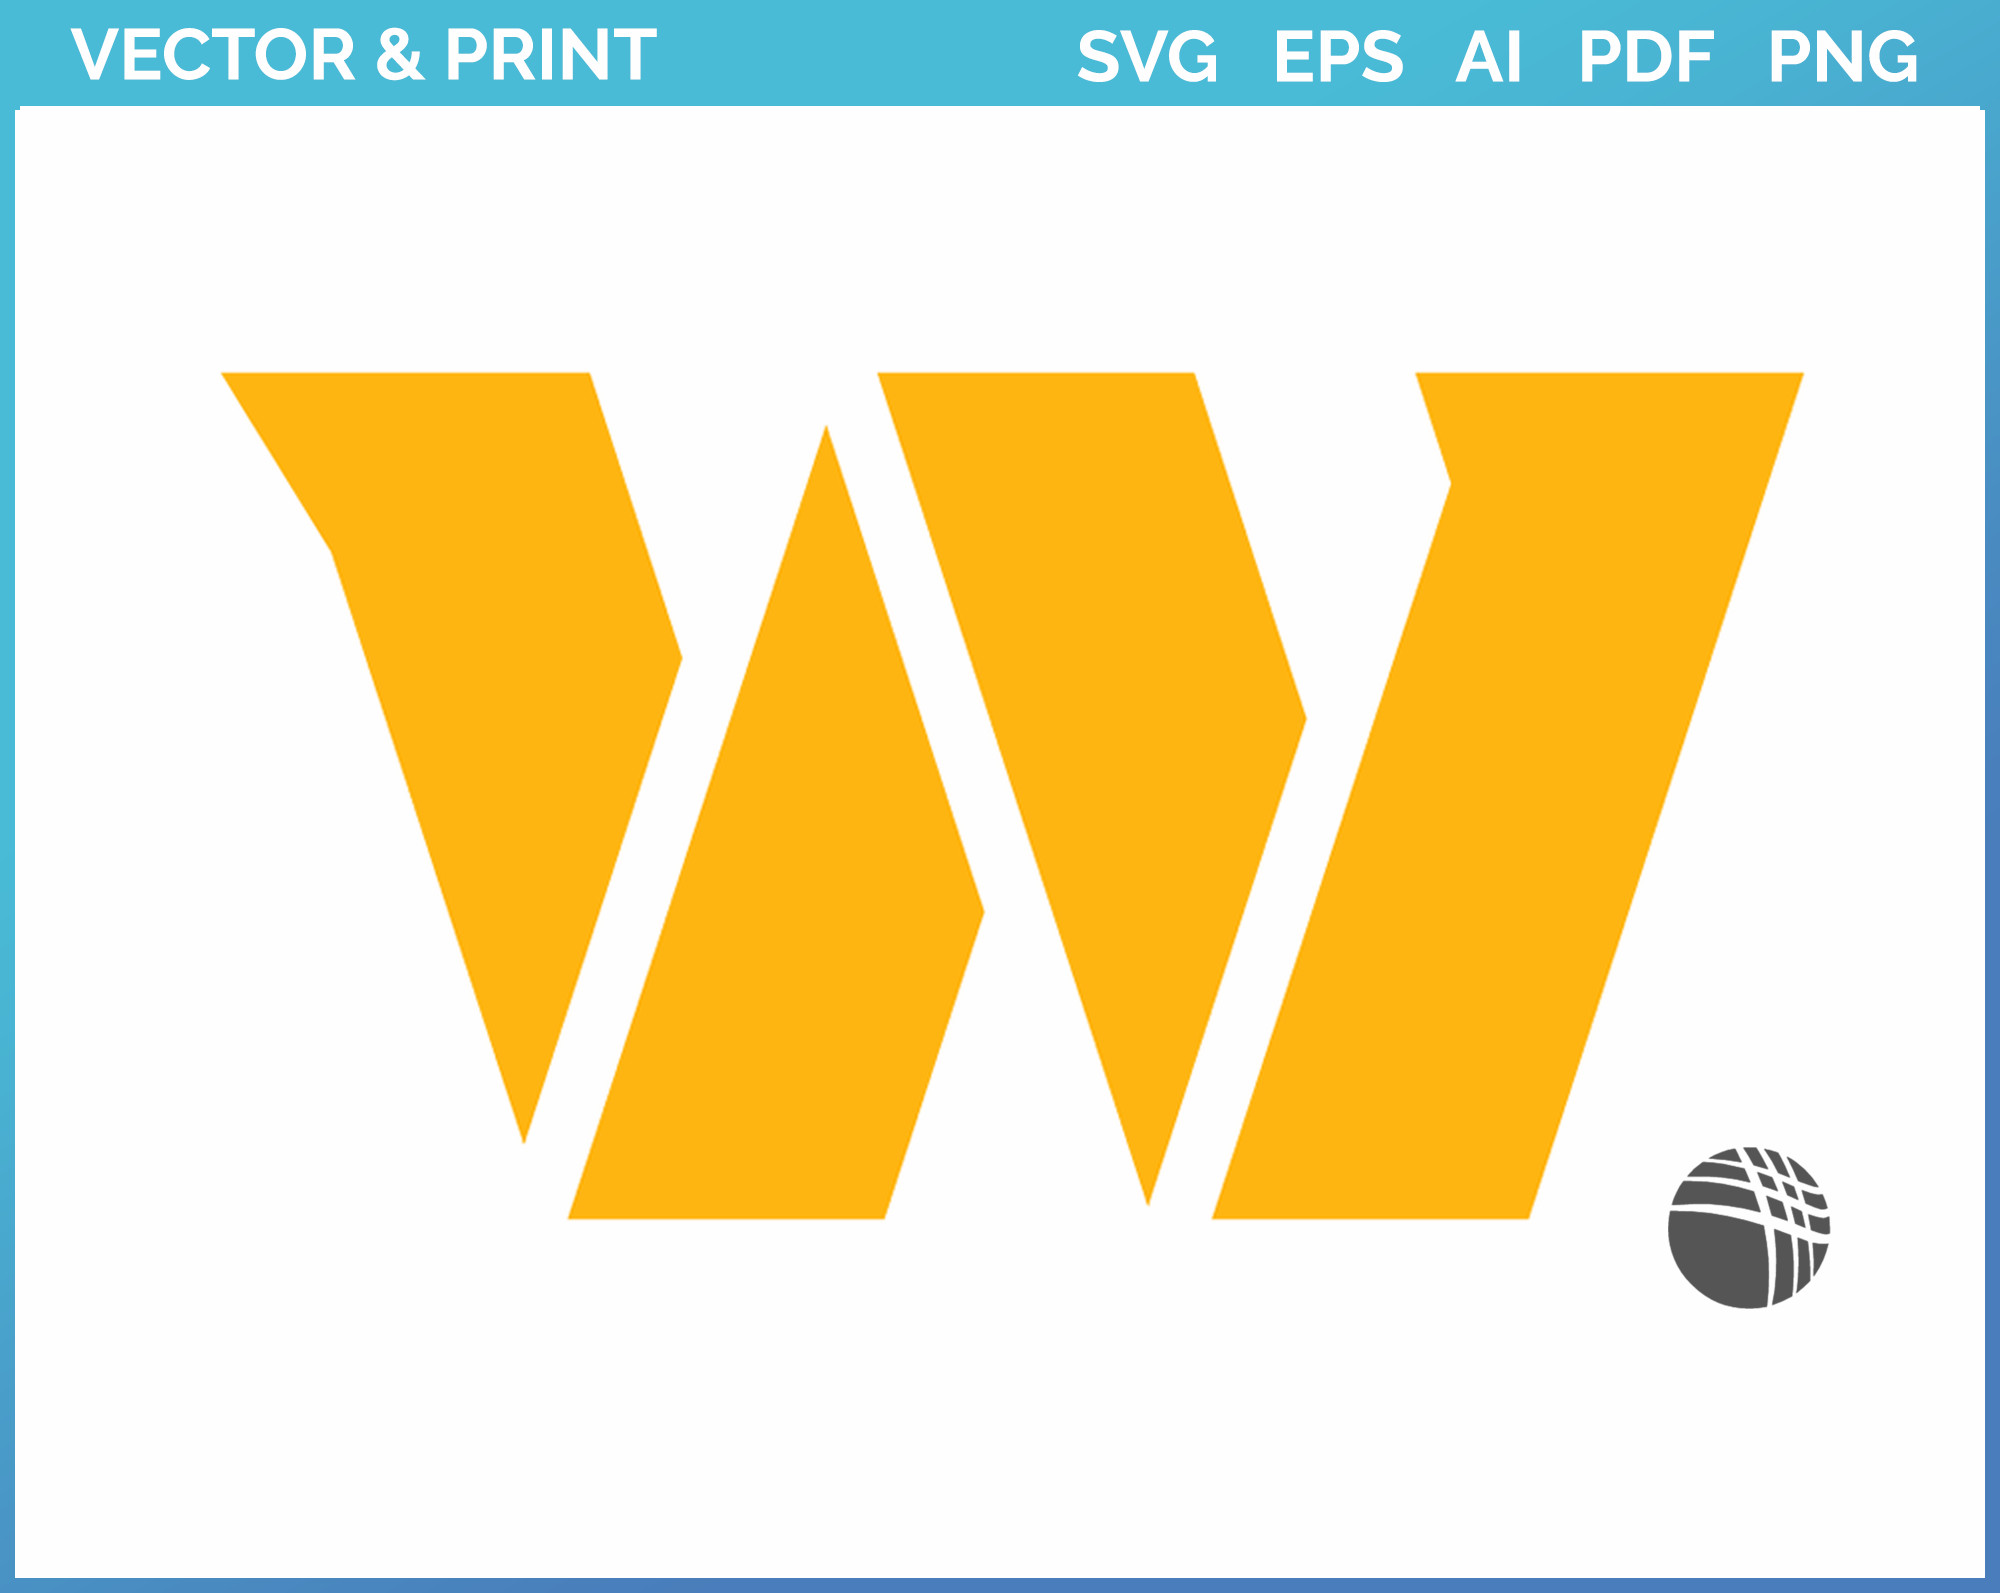 w88.com Logo PNG Vector (PDF) Free Download